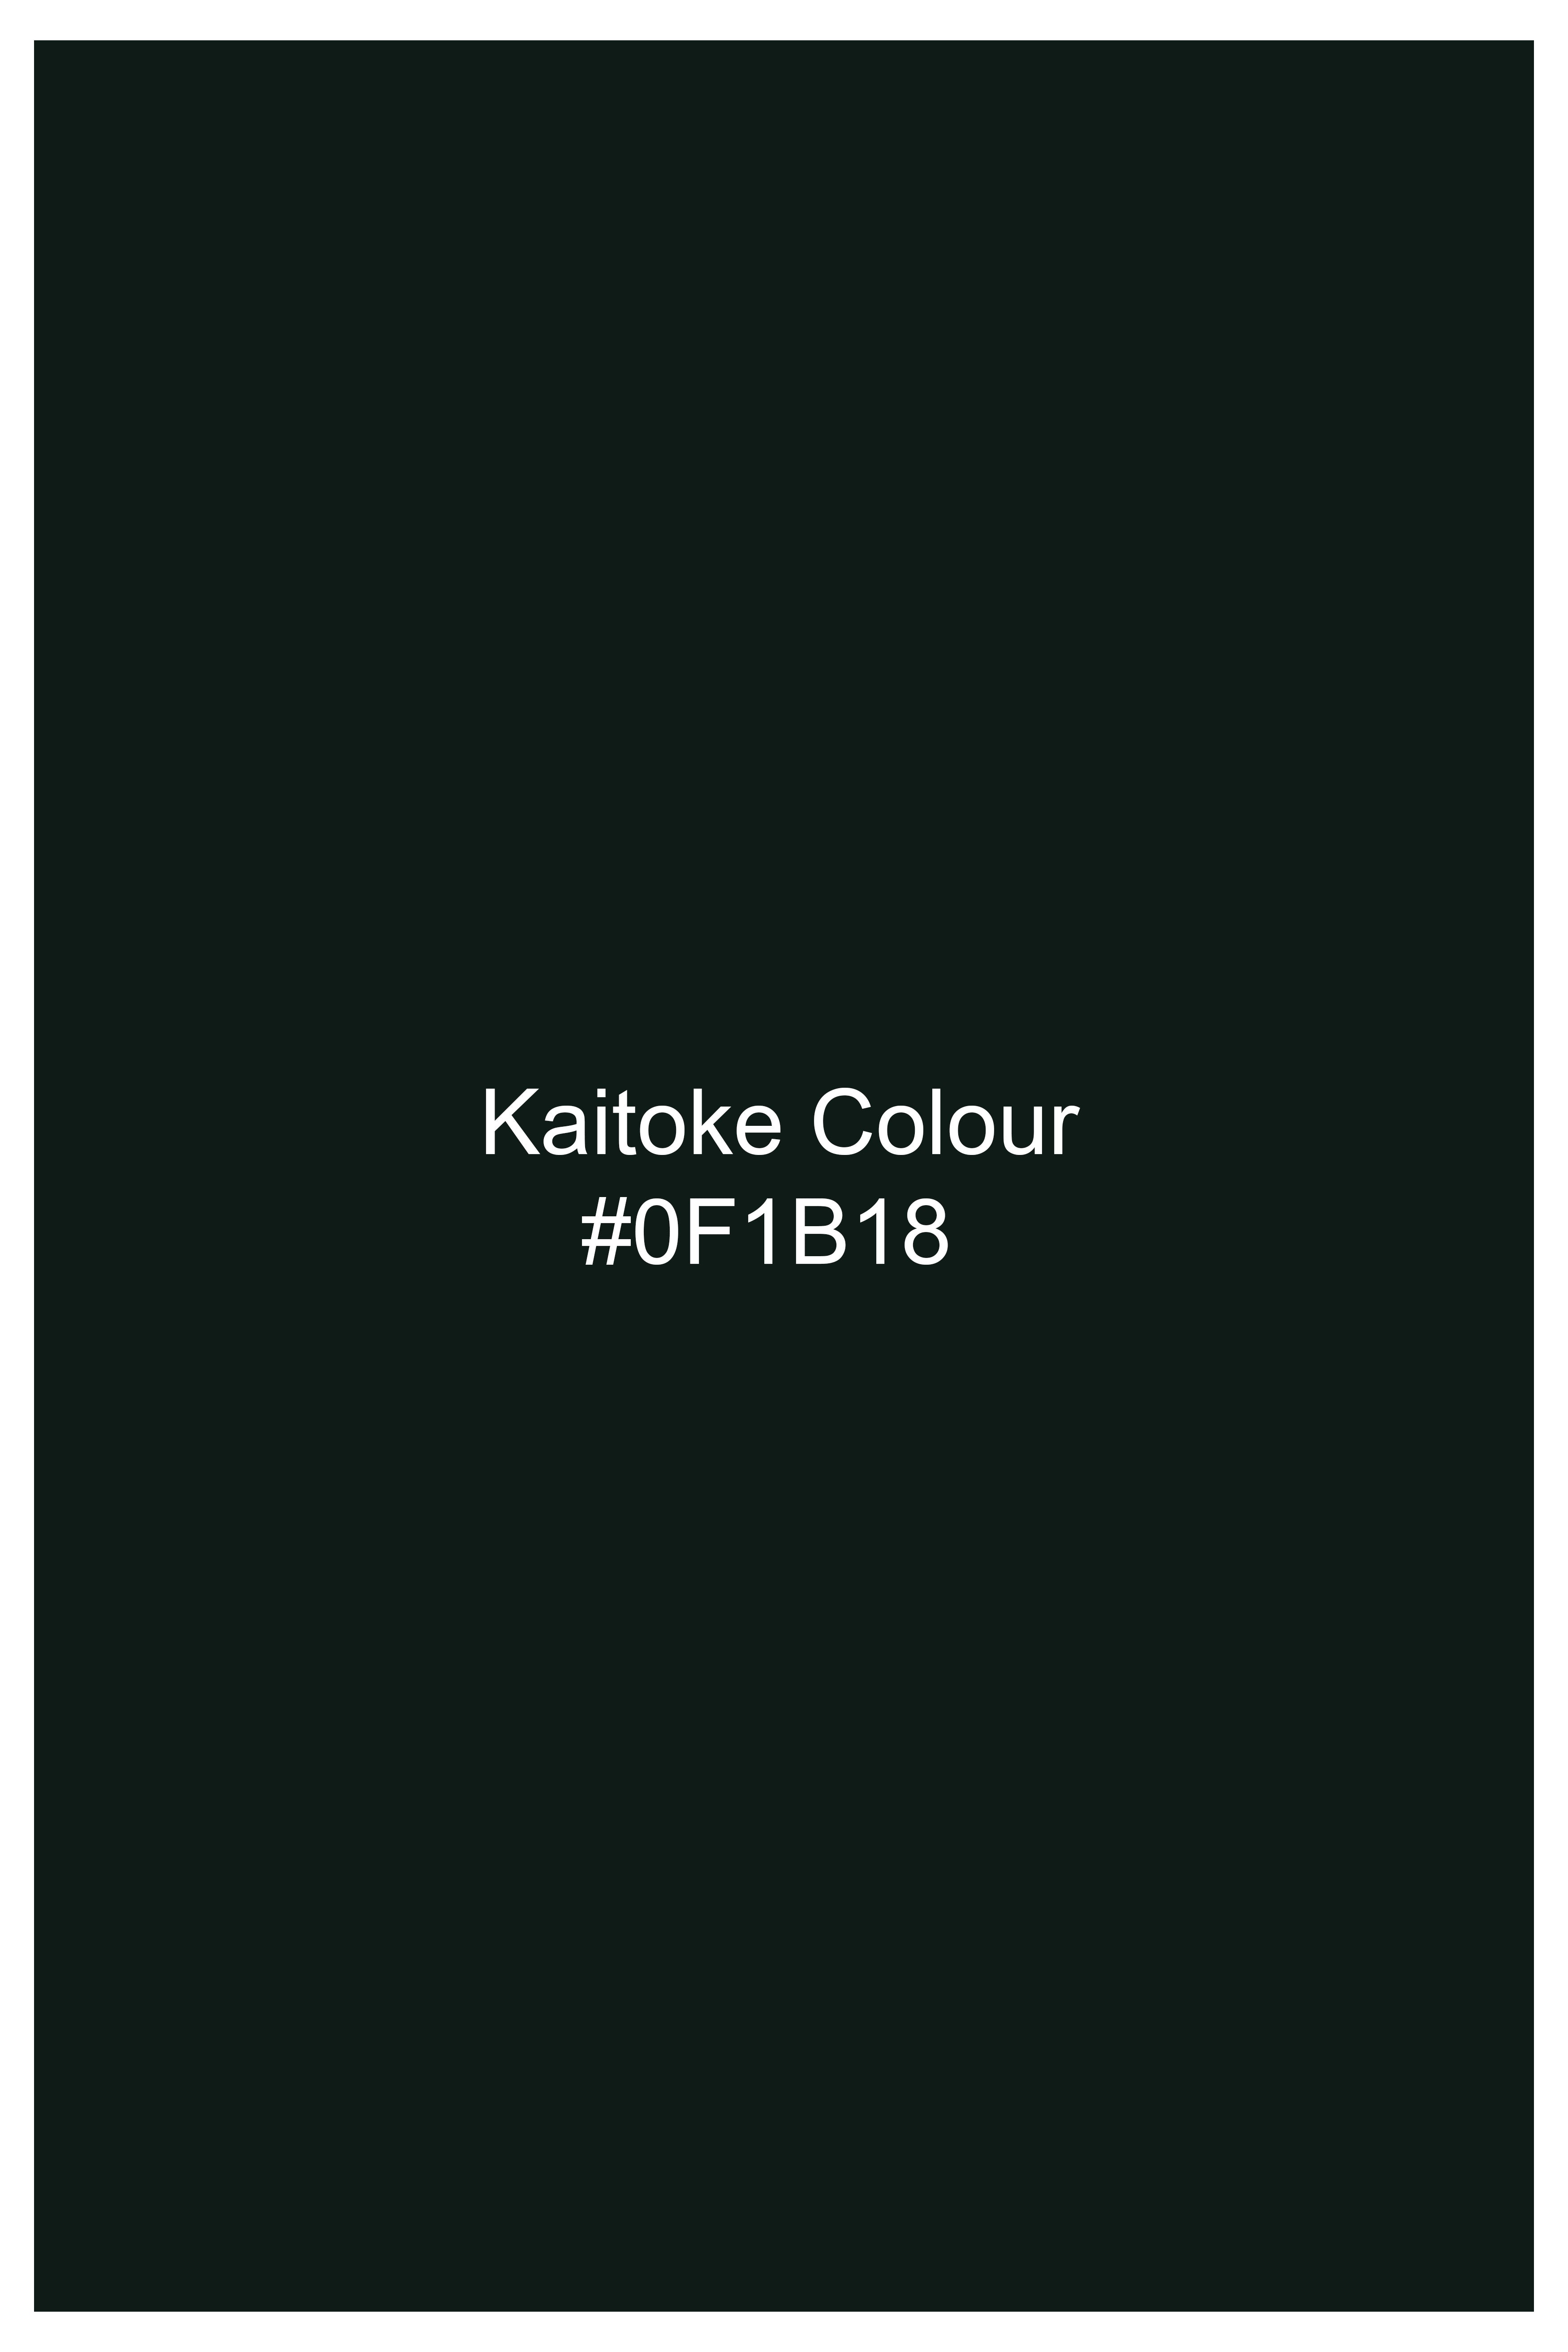 Kaitoke Green Wool Rich Bandhgala Designer Blazer BL2821-D174-36, BL2821-D174-38, BL2821-D174-40, BL2821-D174-42, BL2821-D174-44, BL2821-D174-46, BL2821-D174-48, BL2821-D174-50, BL2821-D174-52, BL2821-D174-54, BL2821-D174-56, BL2821-D174-58, BL2821-D174-60